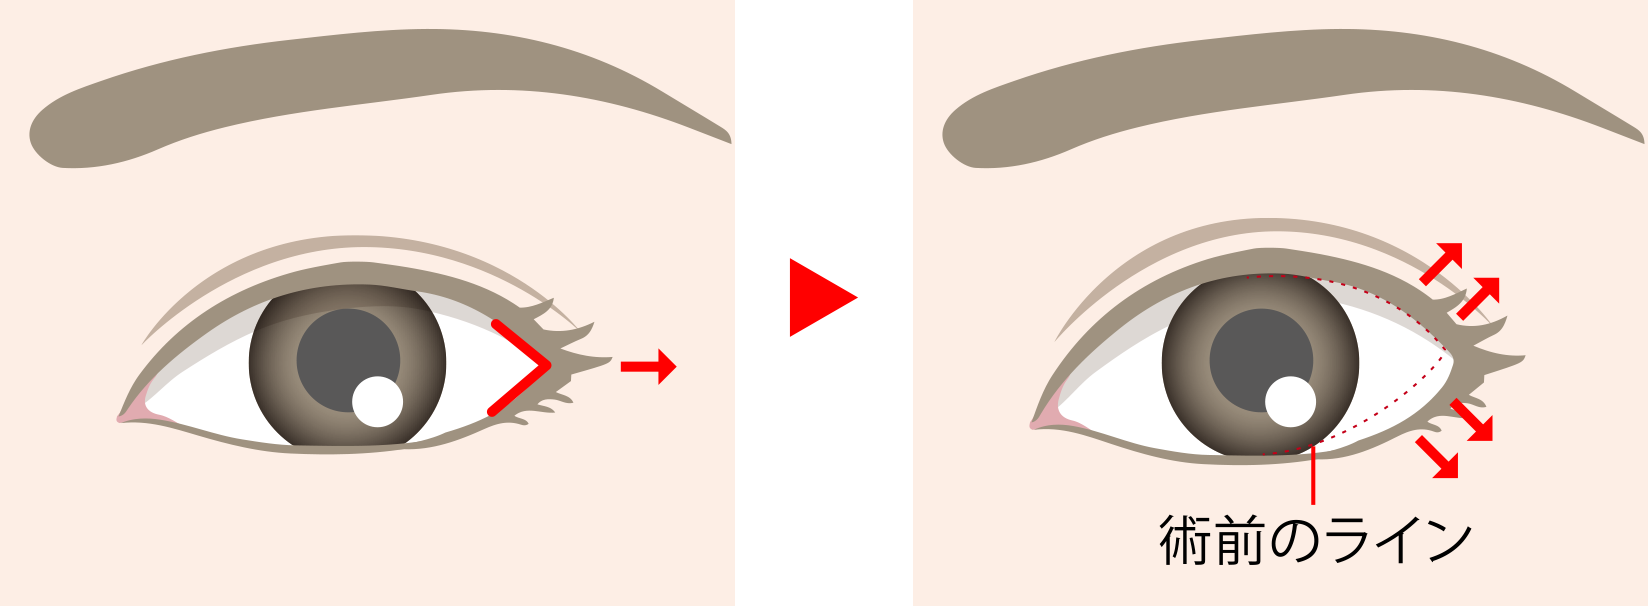 目尻切開の手術方法